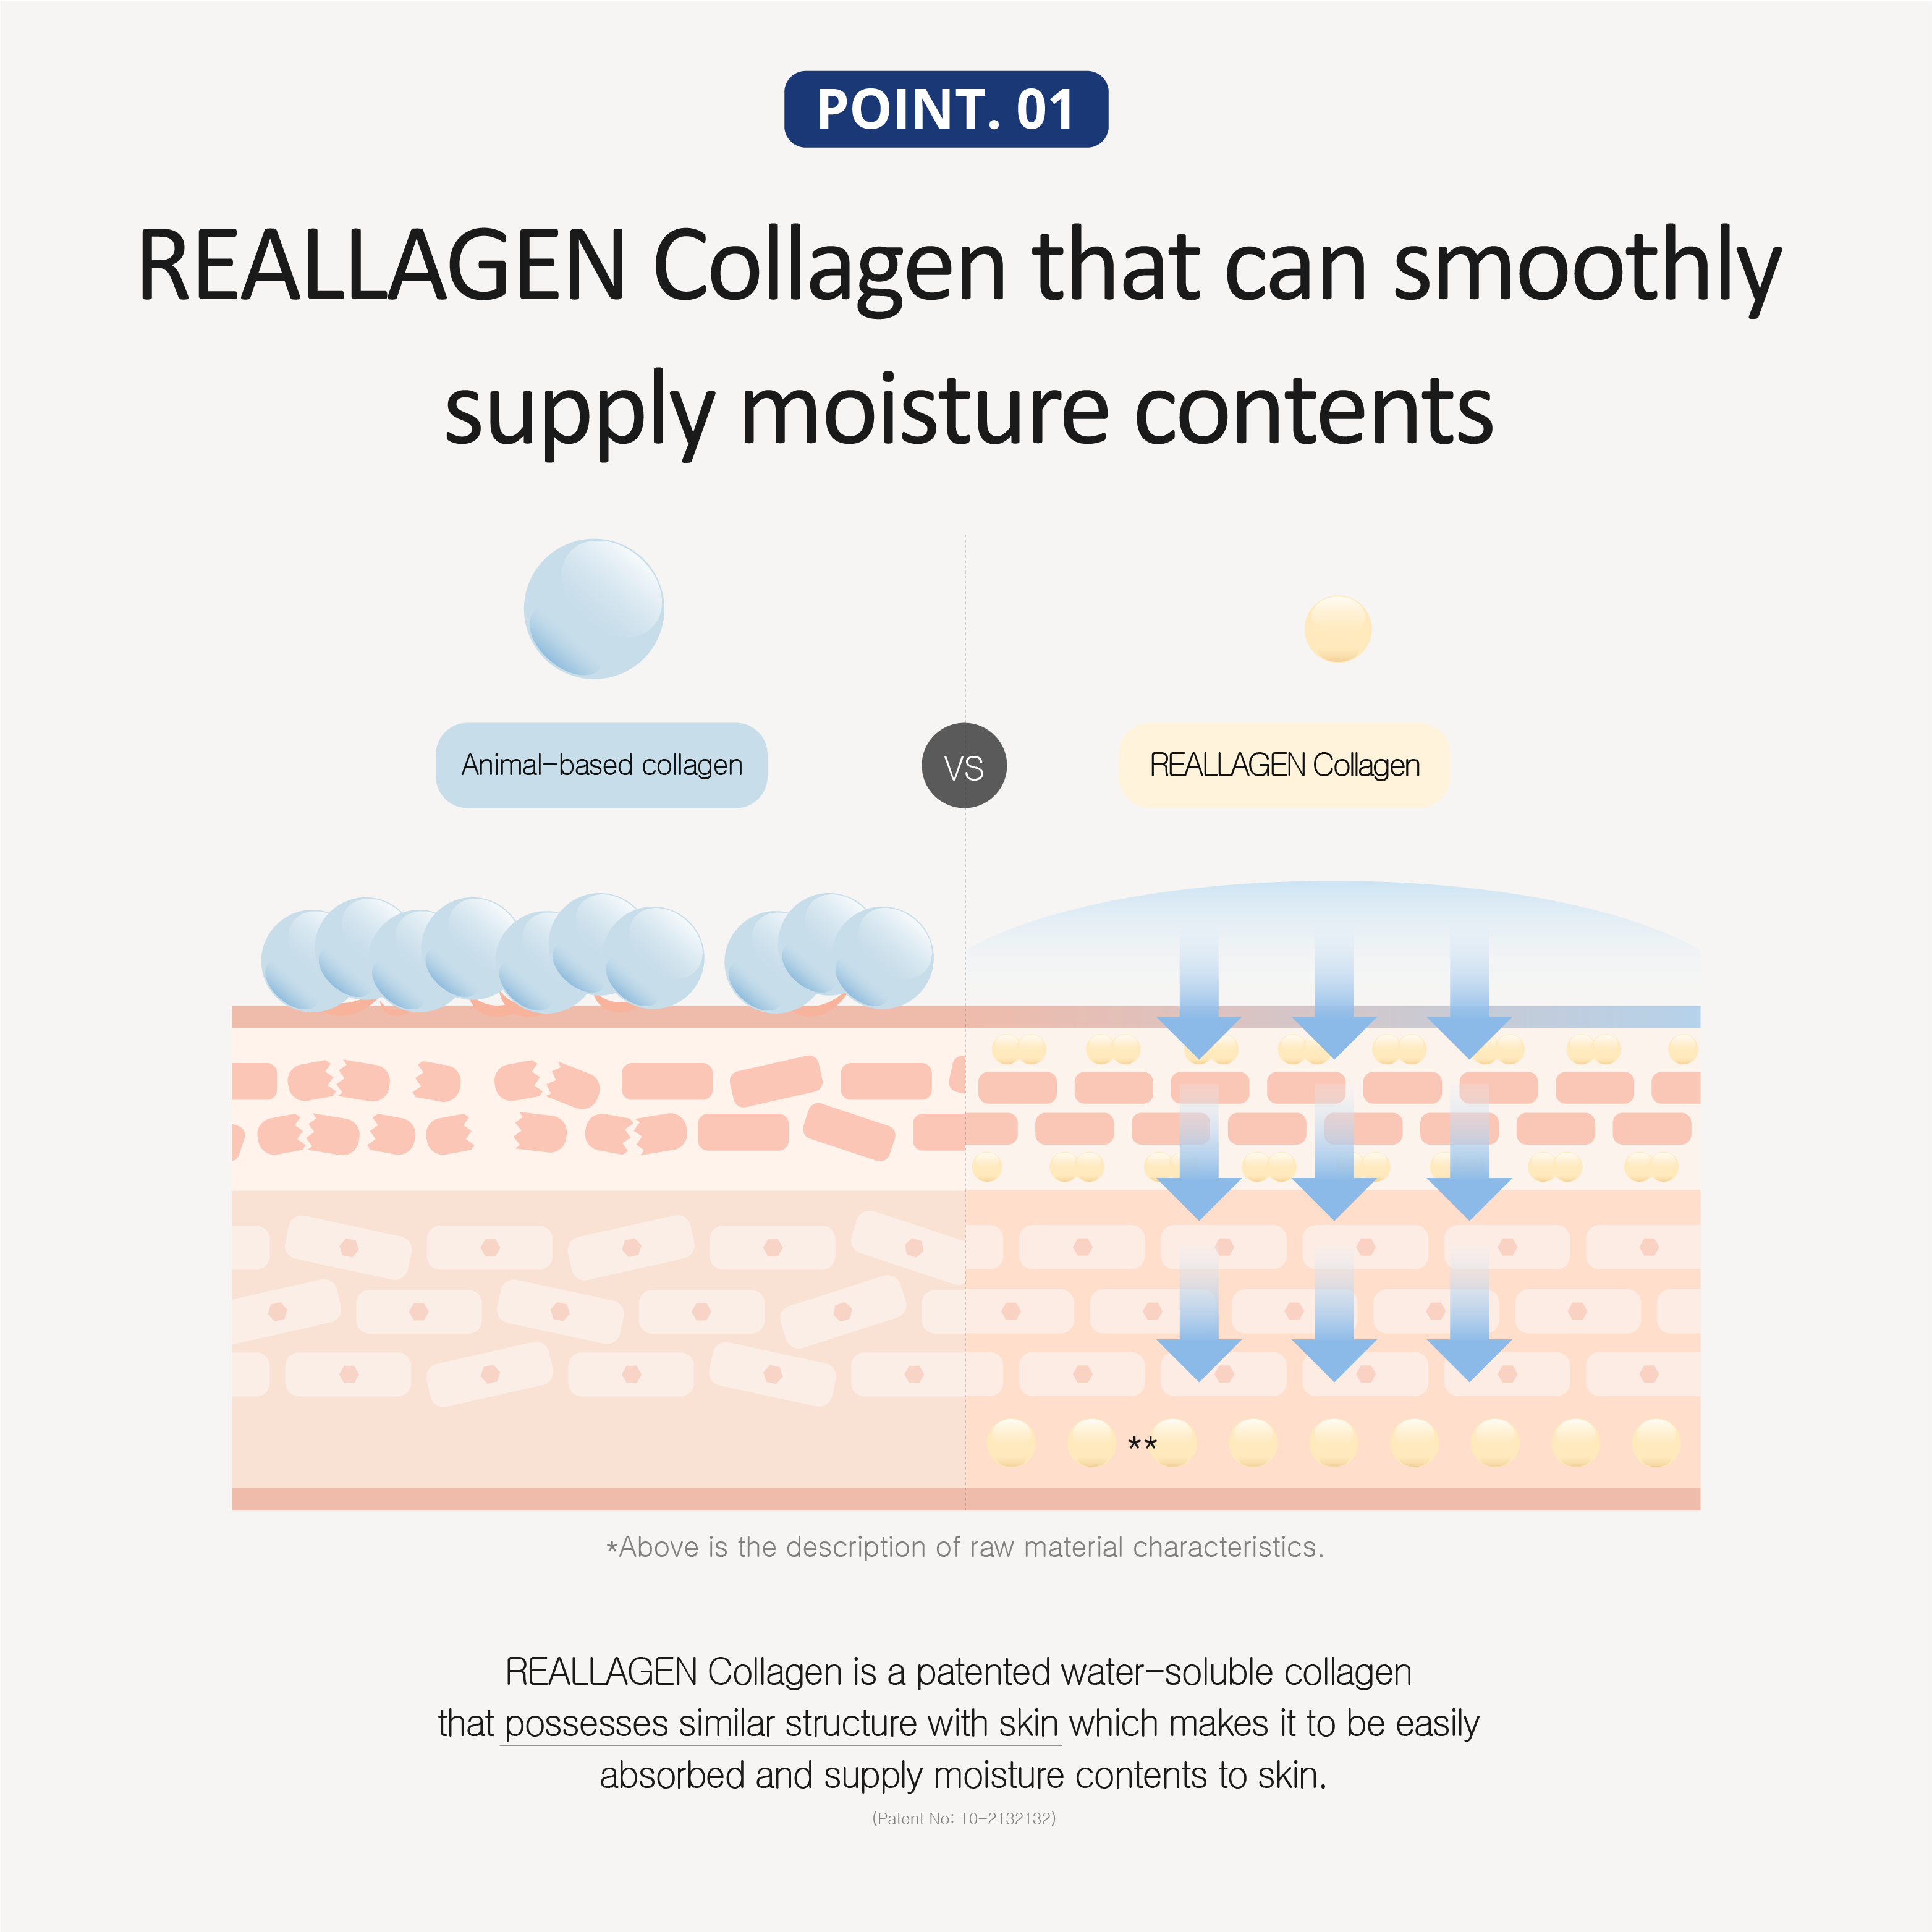 Collagen Body Wash | 500ml(1+1)